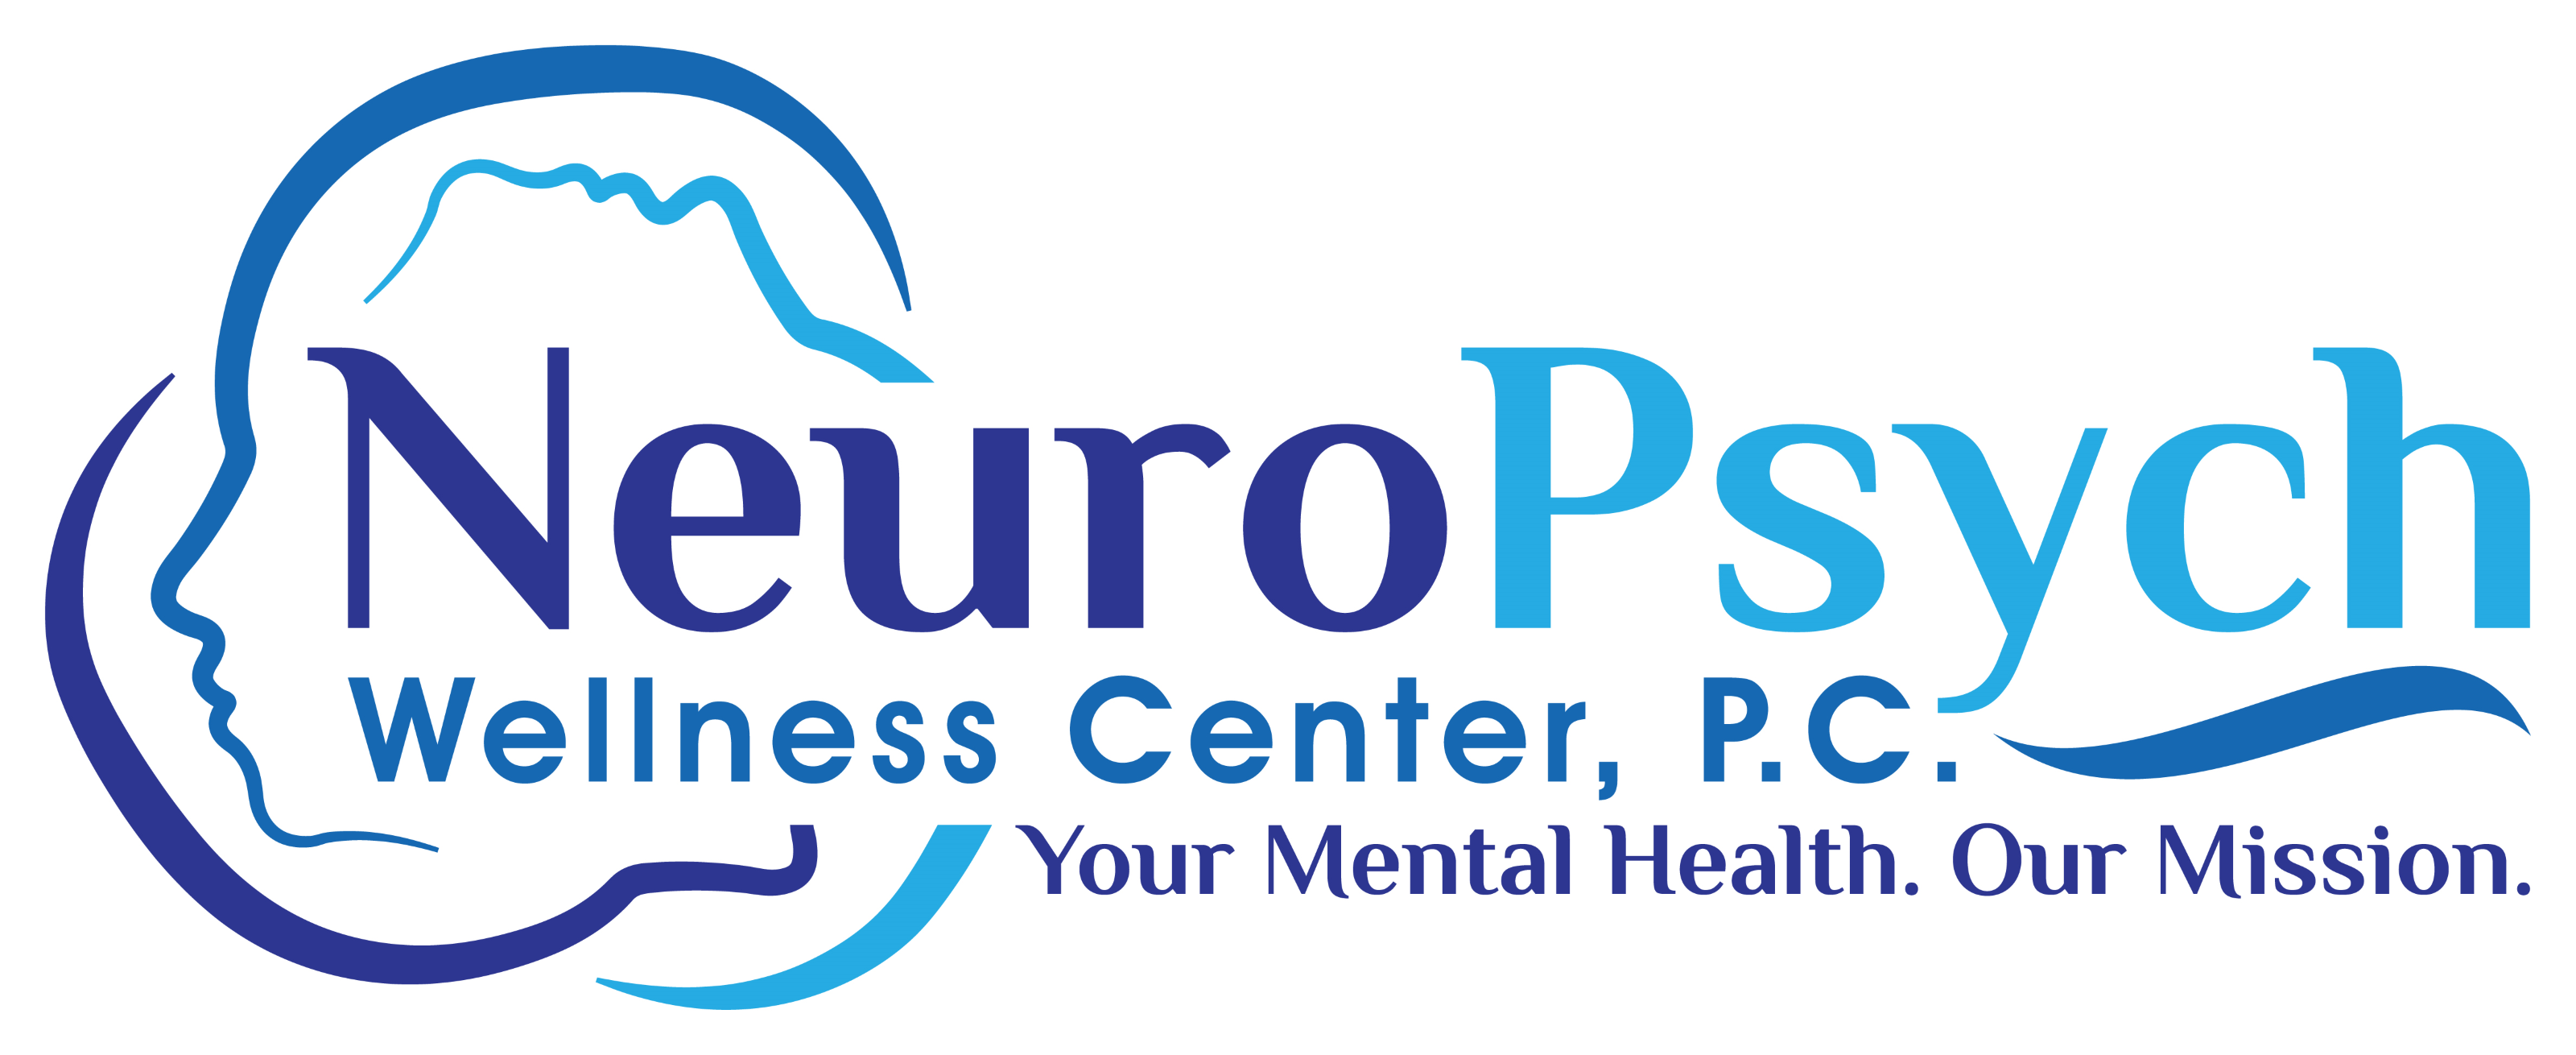 NeuroPsych Wellness Center, PC